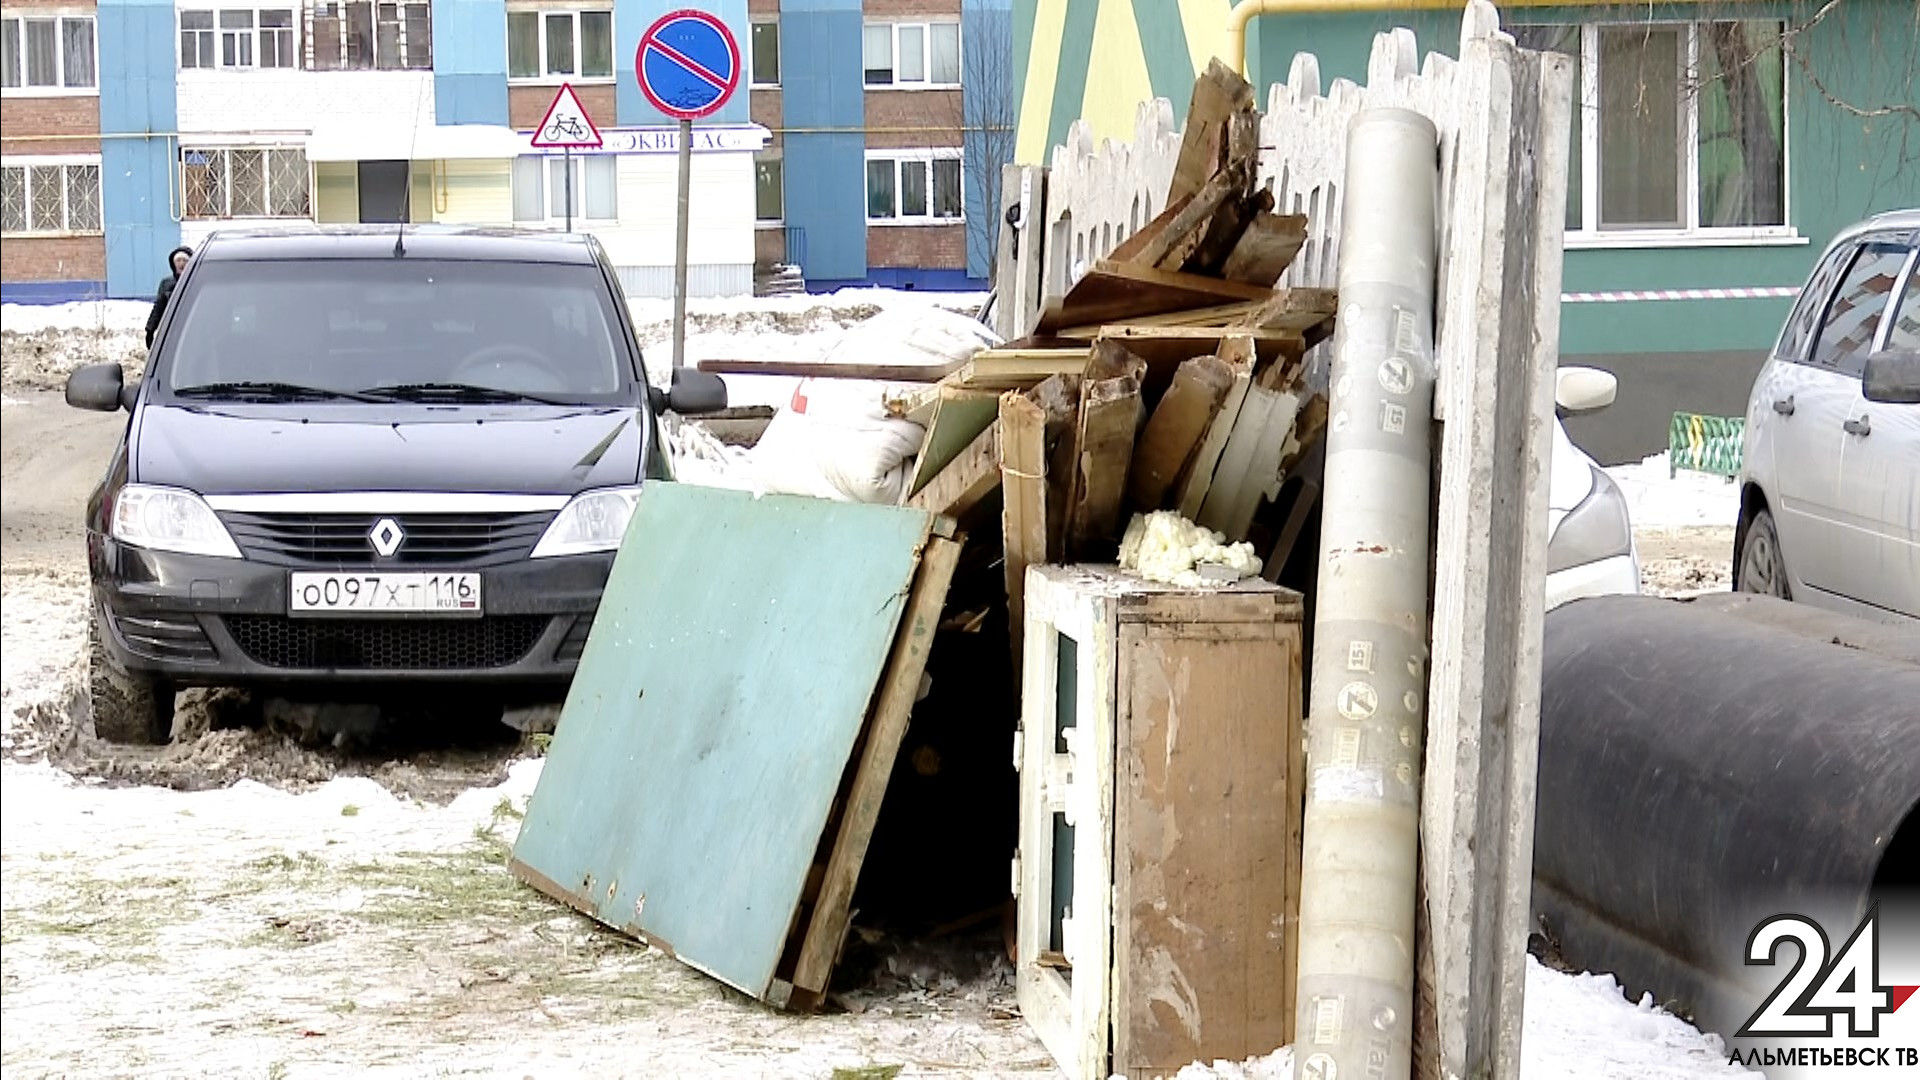 Мусорные баталии: из-за чего ссорятся жители двух дворов в Альметьевске